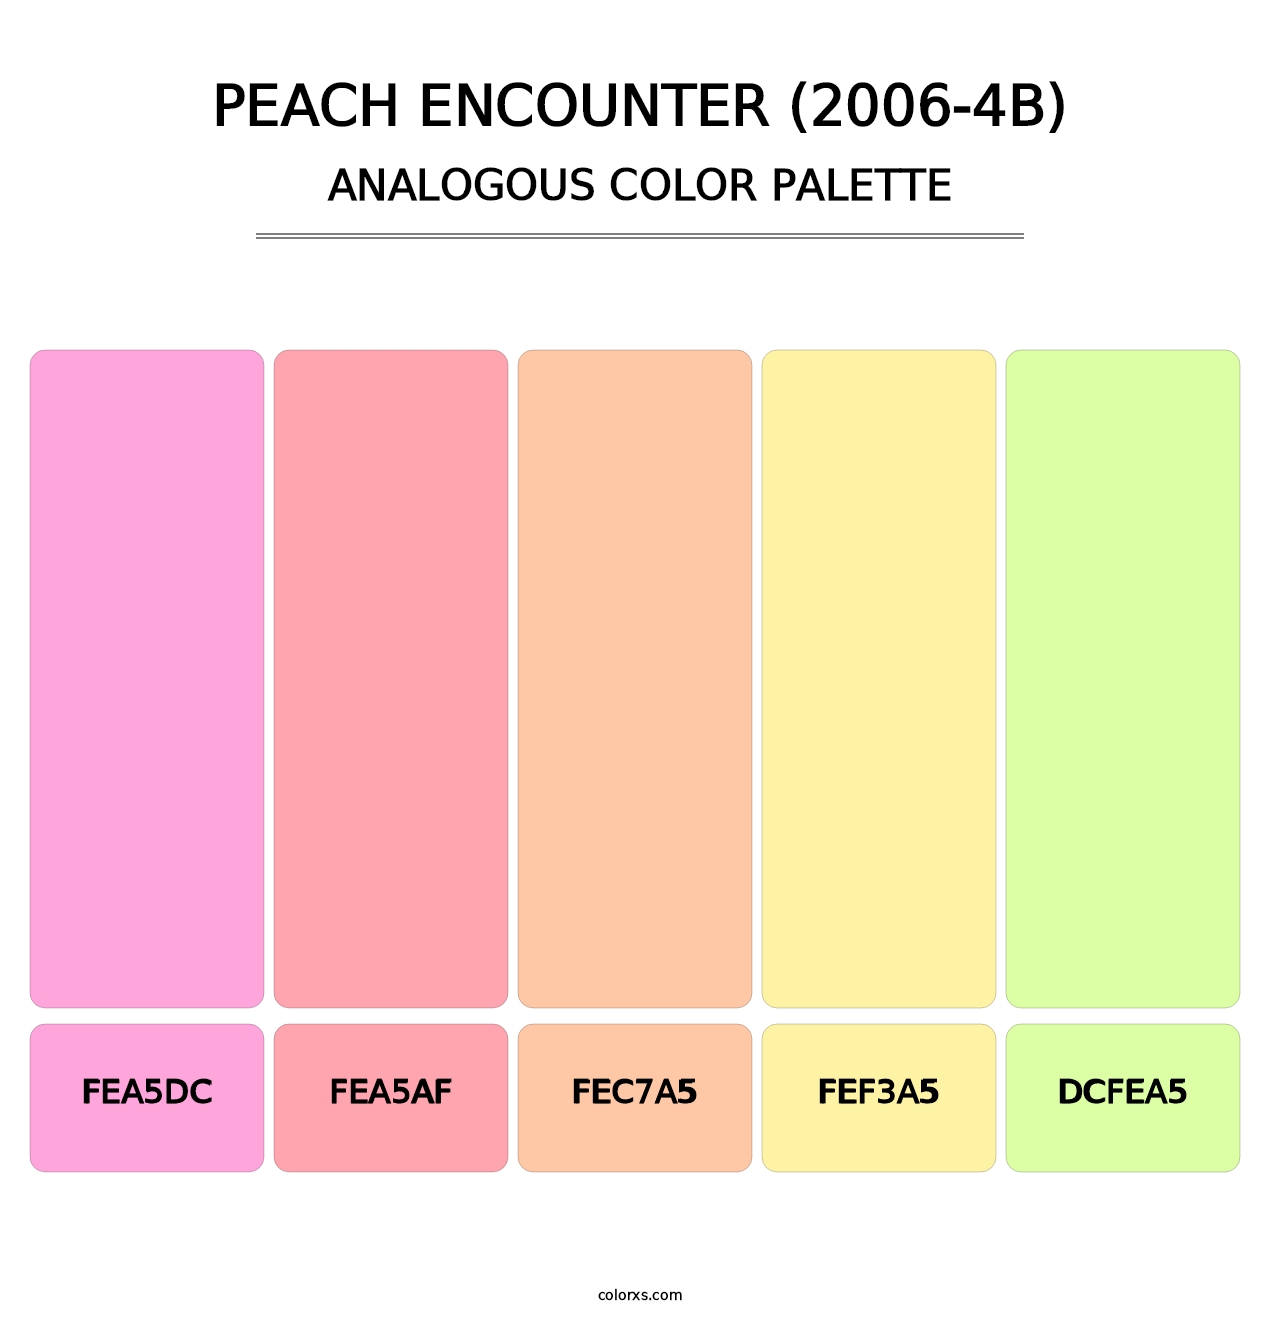 Peach Encounter (2006-4B) - Analogous Color Palette